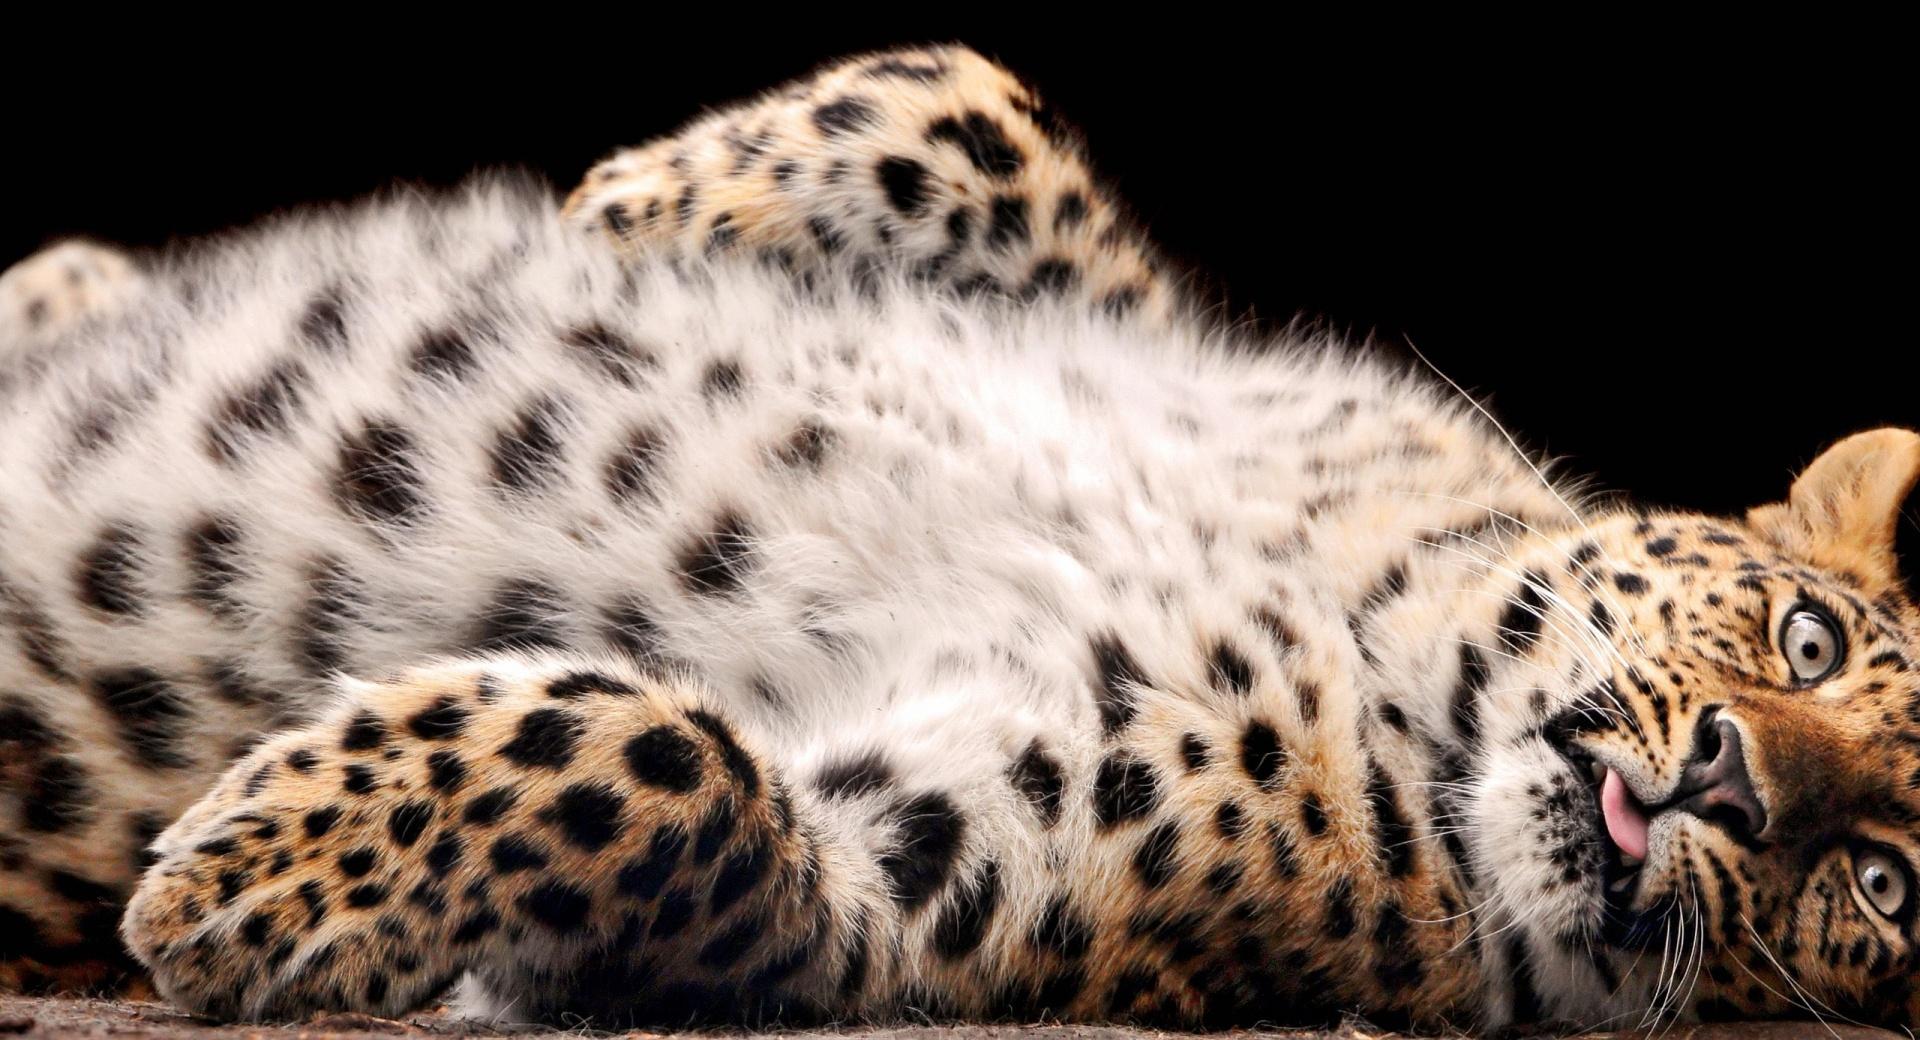 Leopard Cub at 2048 x 2048 iPad size wallpapers HD quality